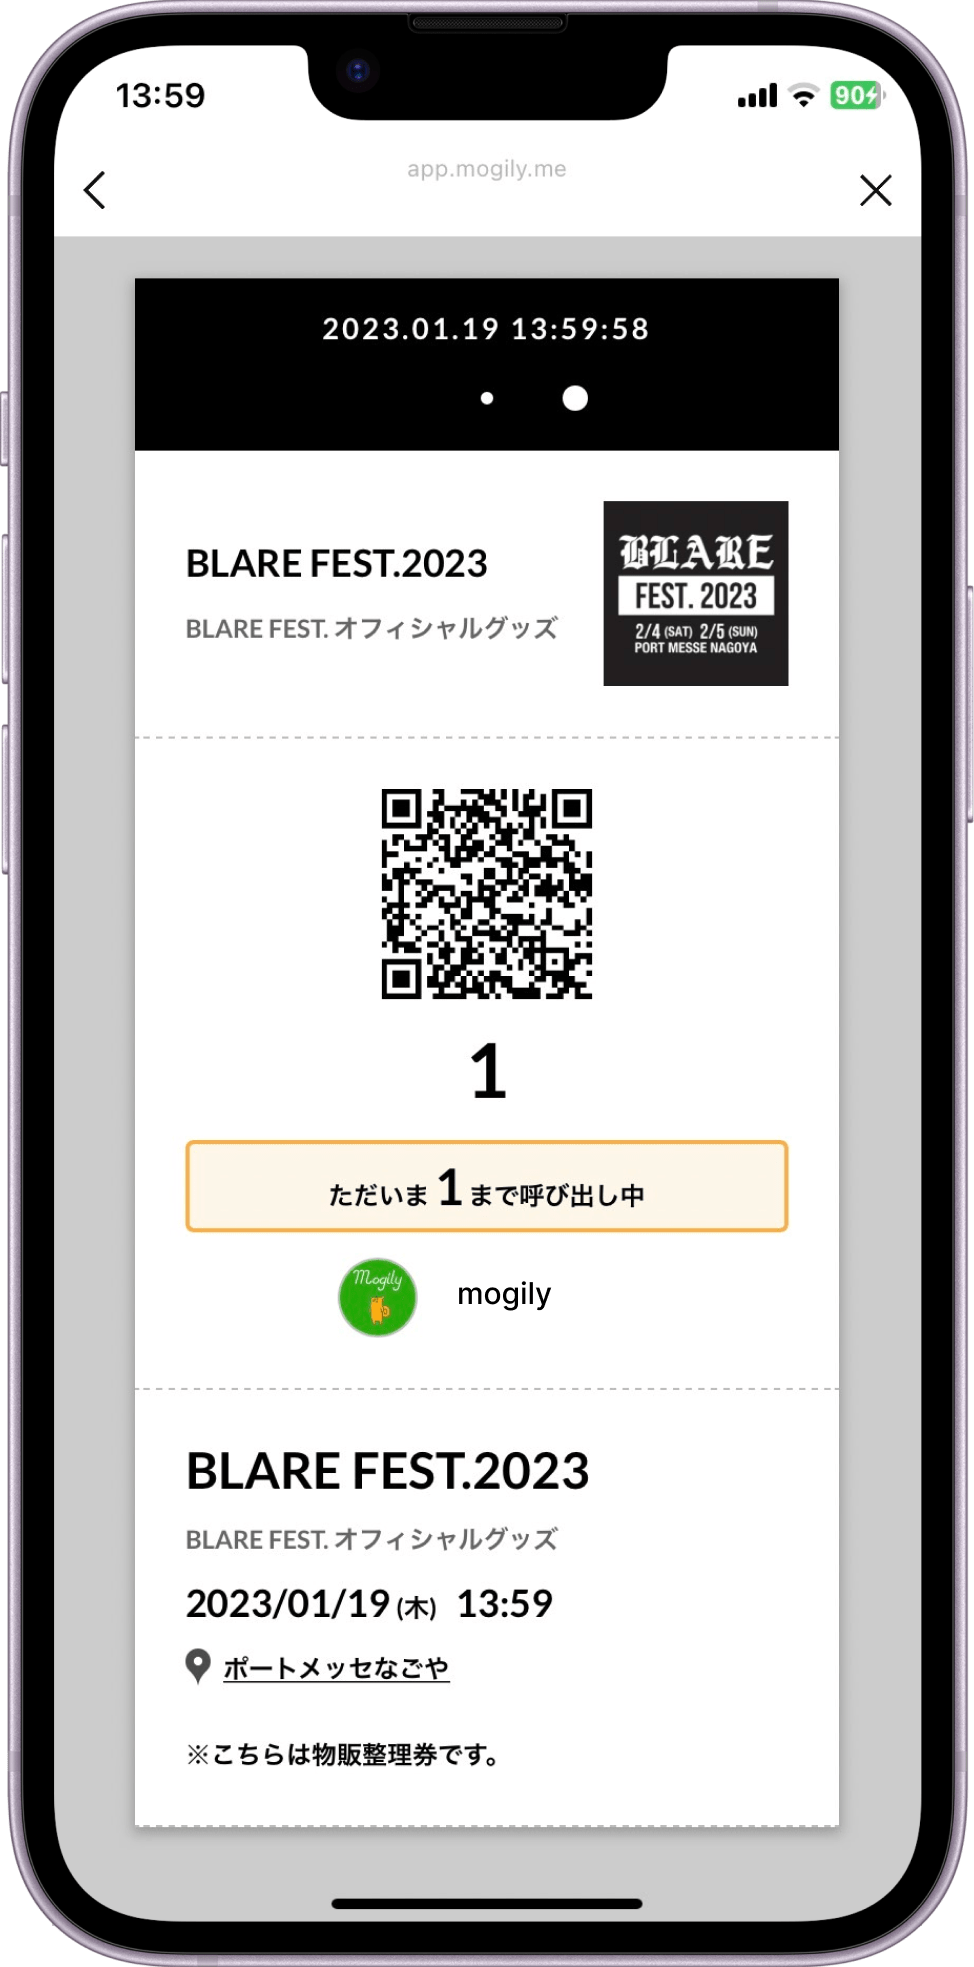 BLARE FEST 2023